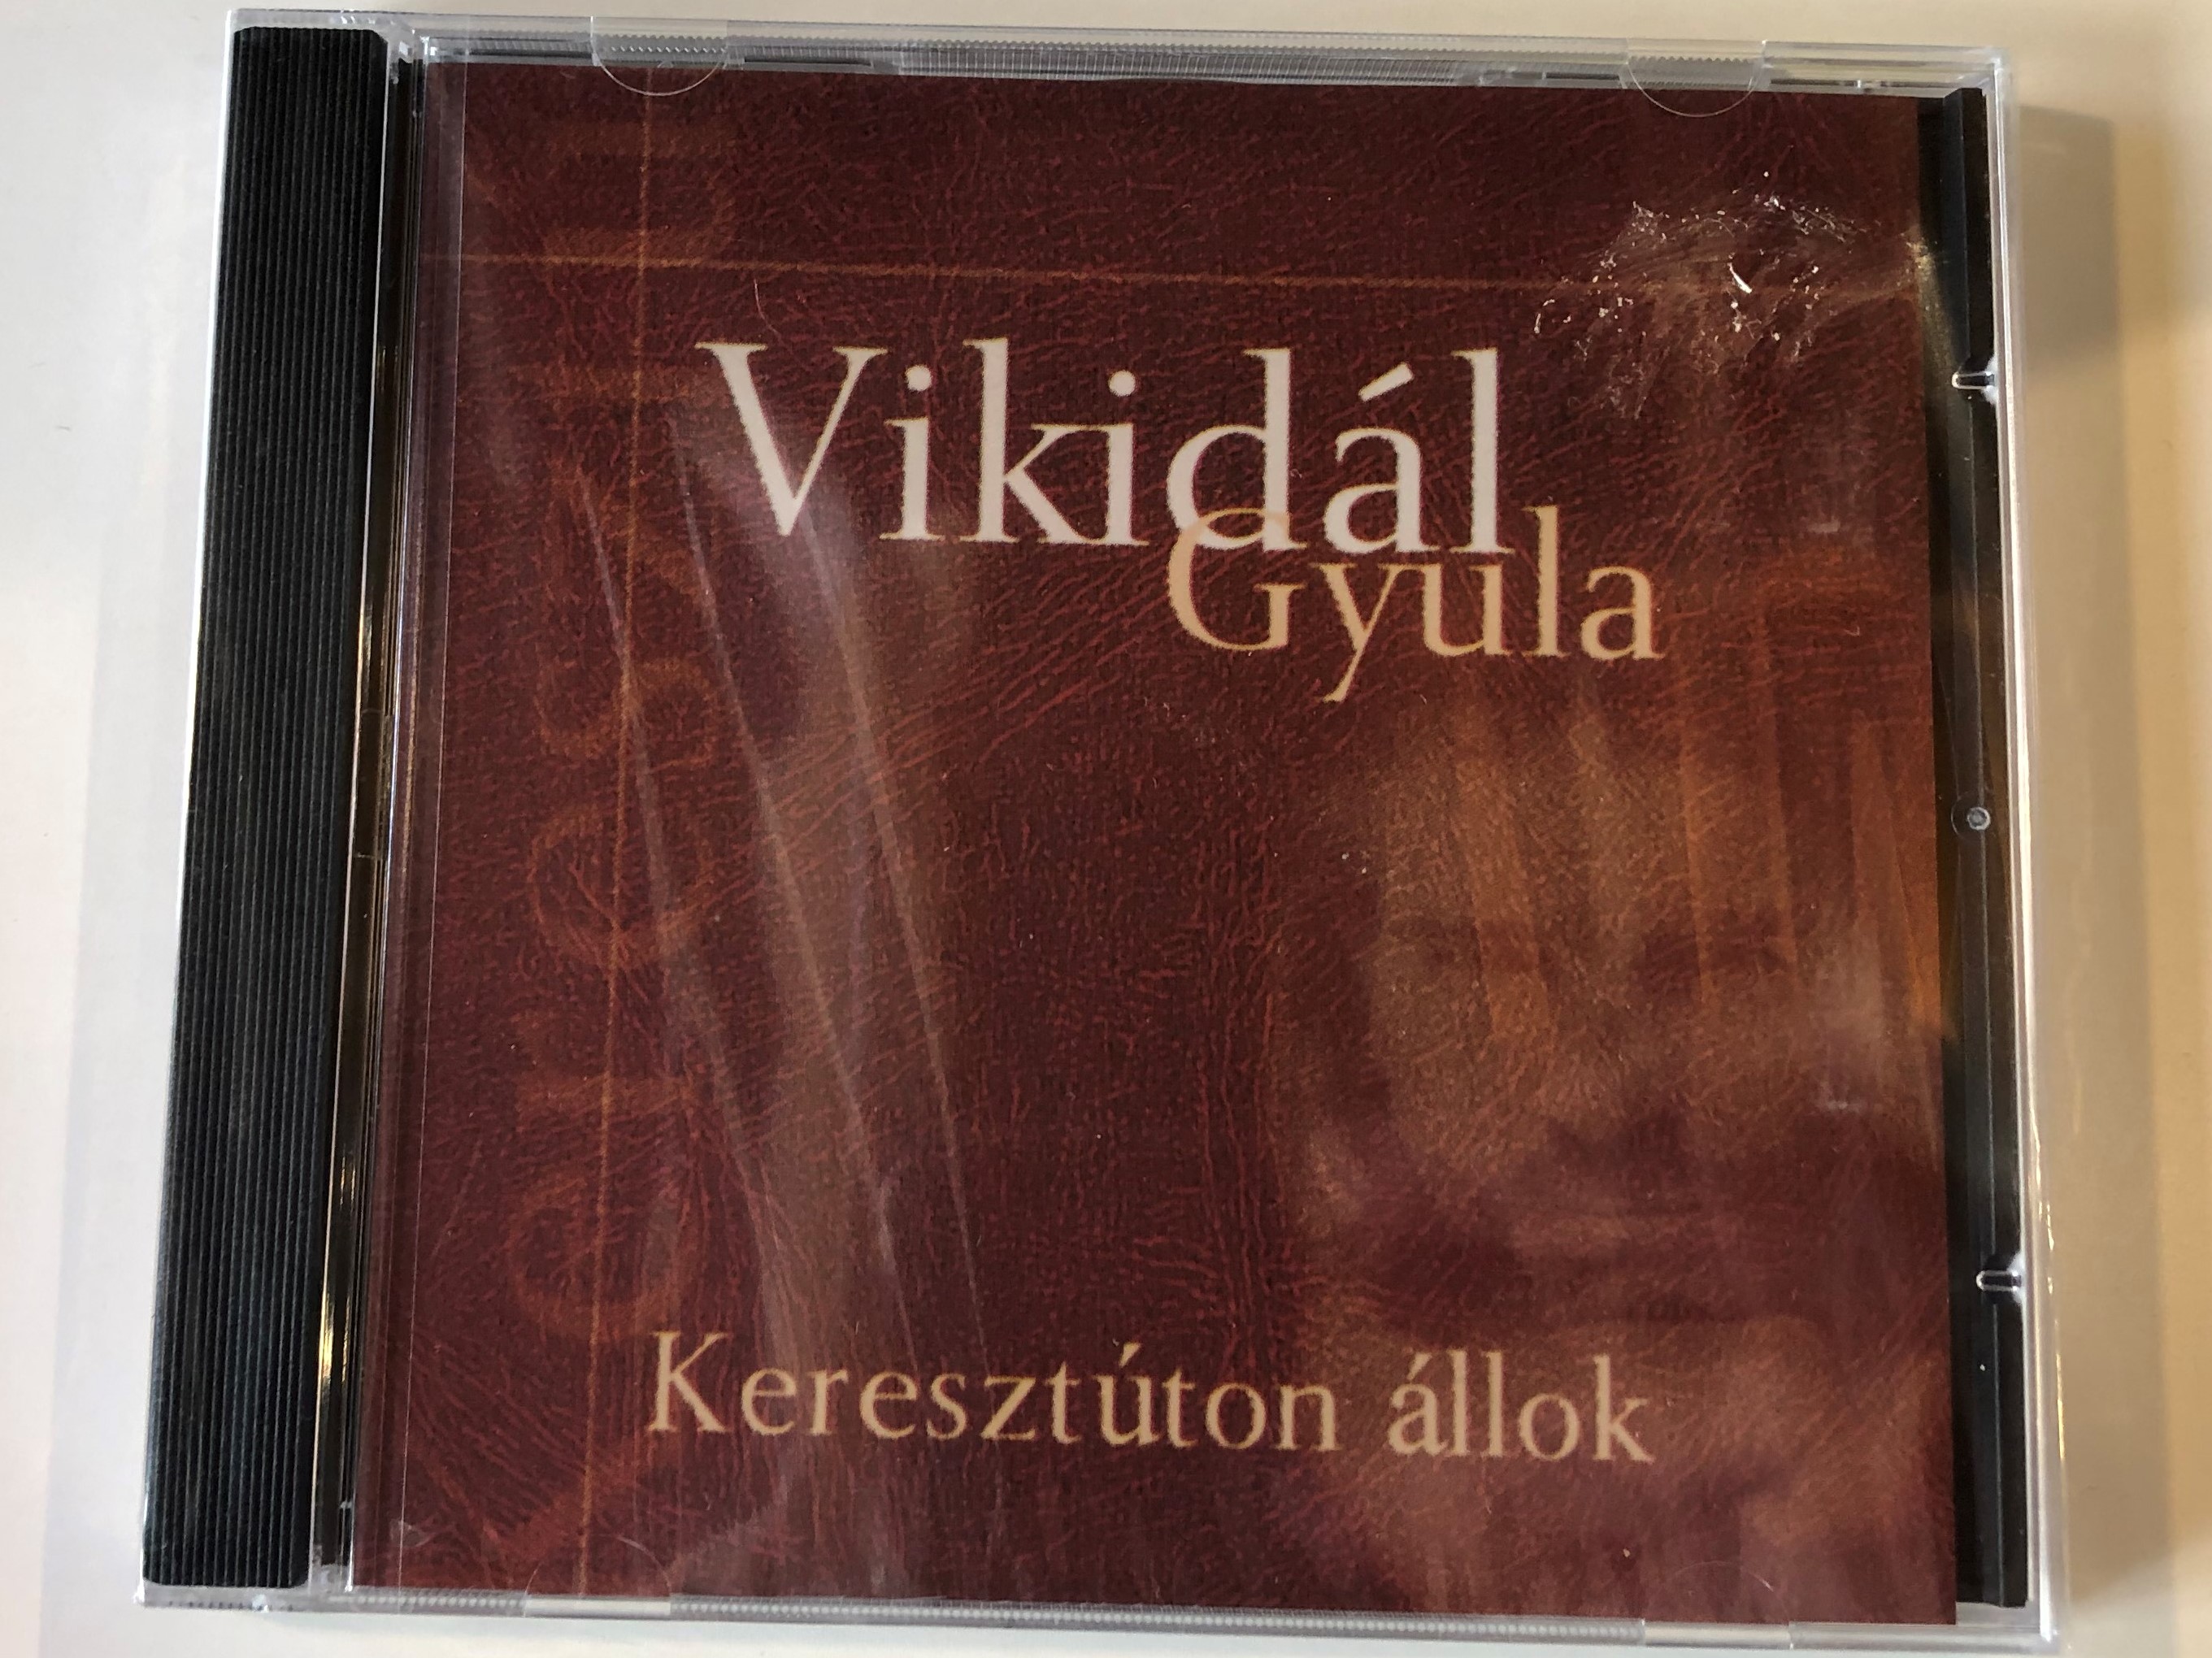 vikid-l-gyula-kereszt-ton-llok-exkluziv-music-kiad-audio-cd-emk-026-1-.jpg